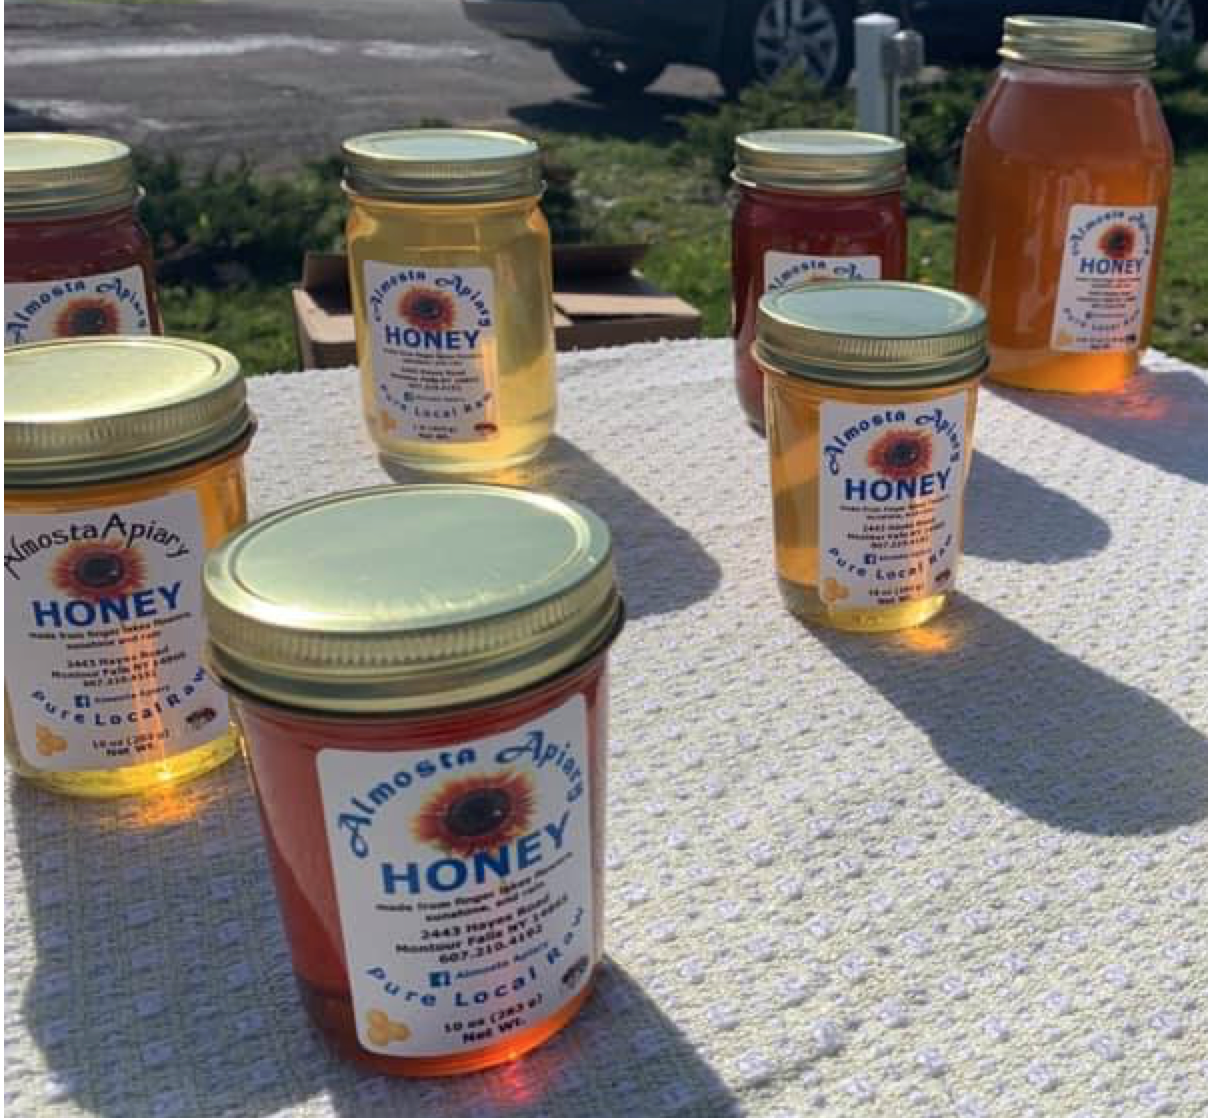 Almosta Apiary Dark Honey in 16 oz Jelly Jar